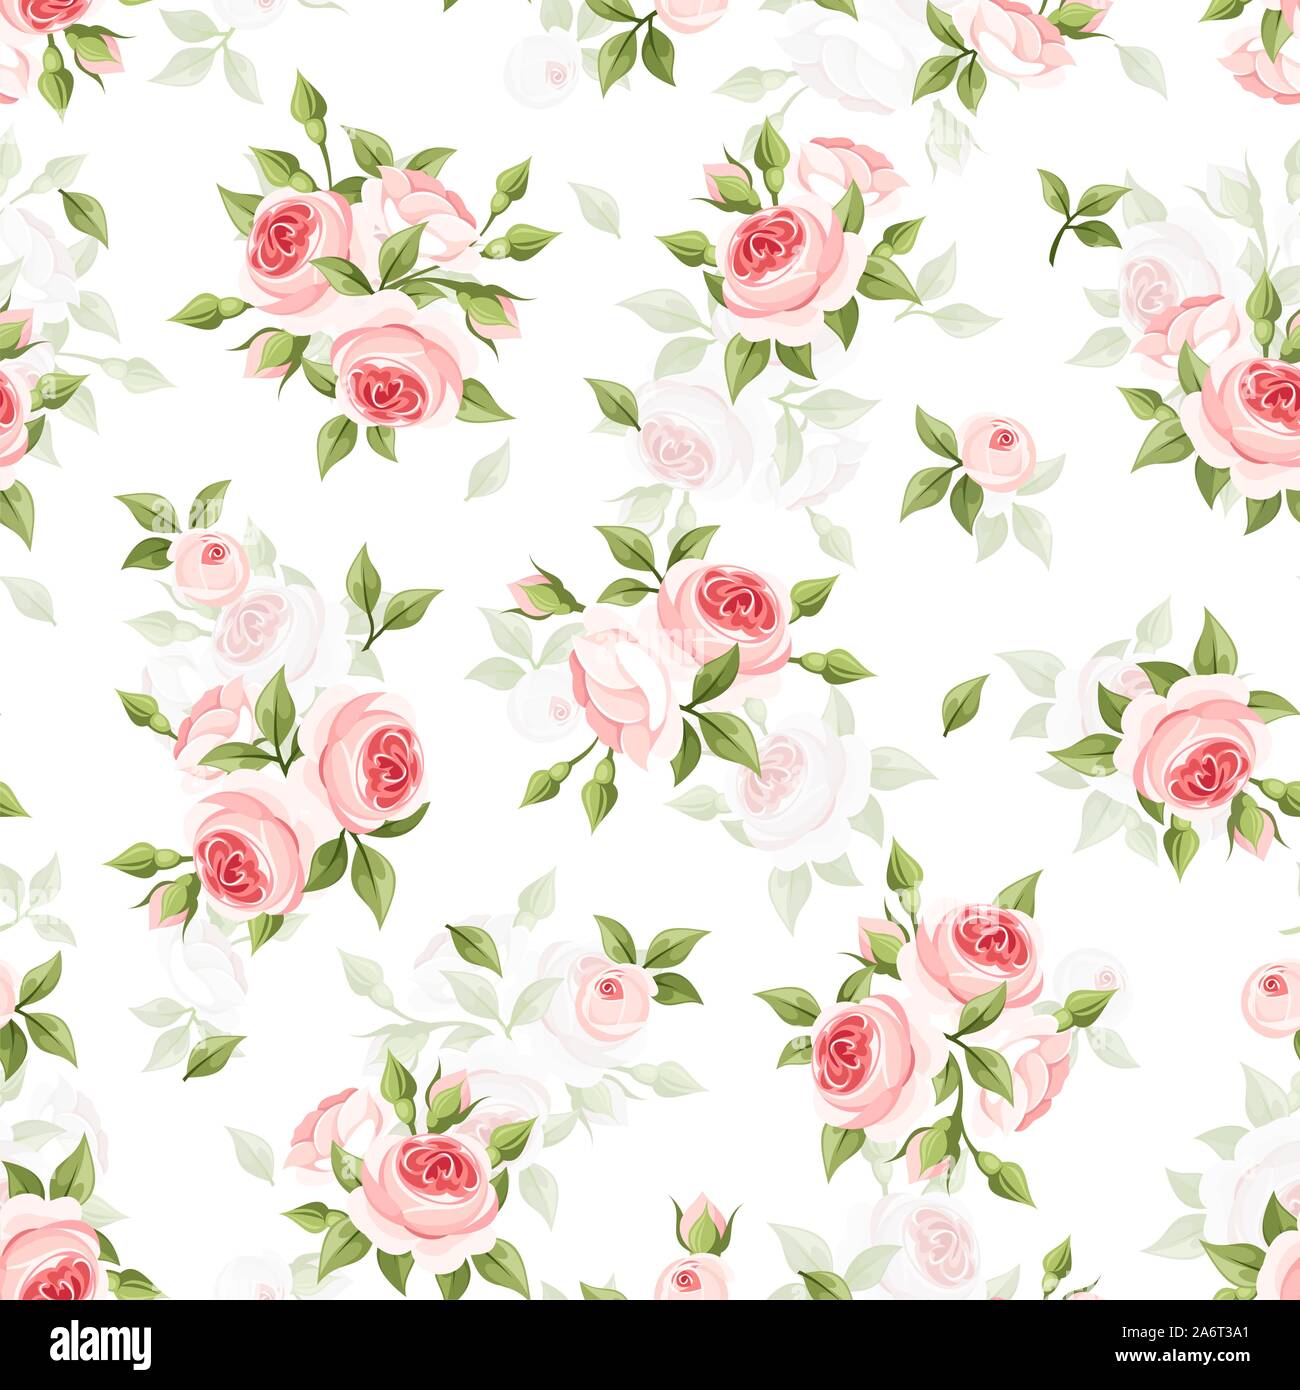 Vektor nahtlose Muster mit rosa Rosen auf einem weißen Hintergrund. Stock Vektor